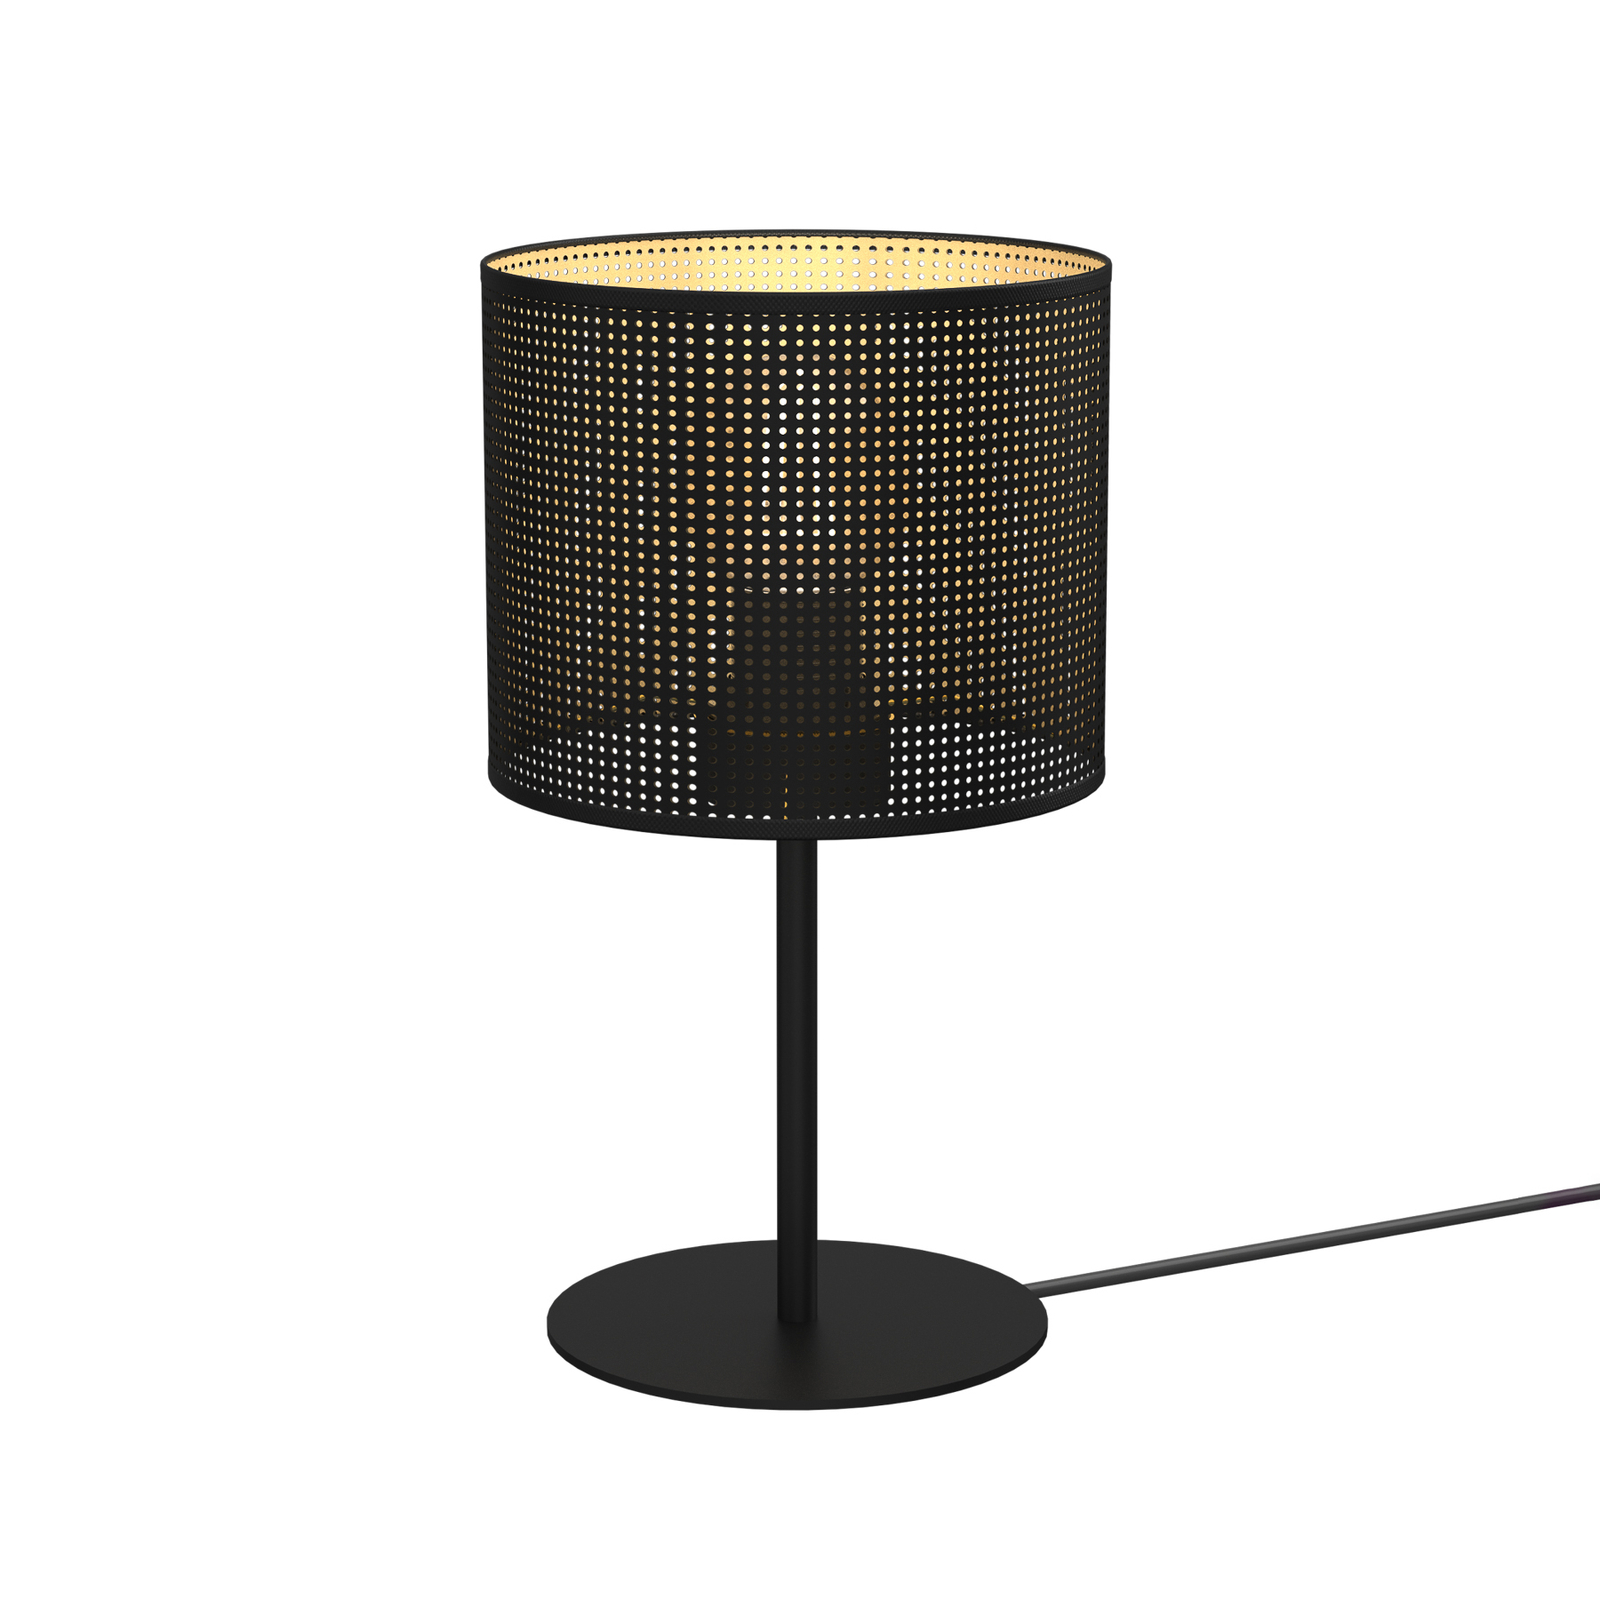 Jovin bordlampe, højde 34 cm, sort/guld